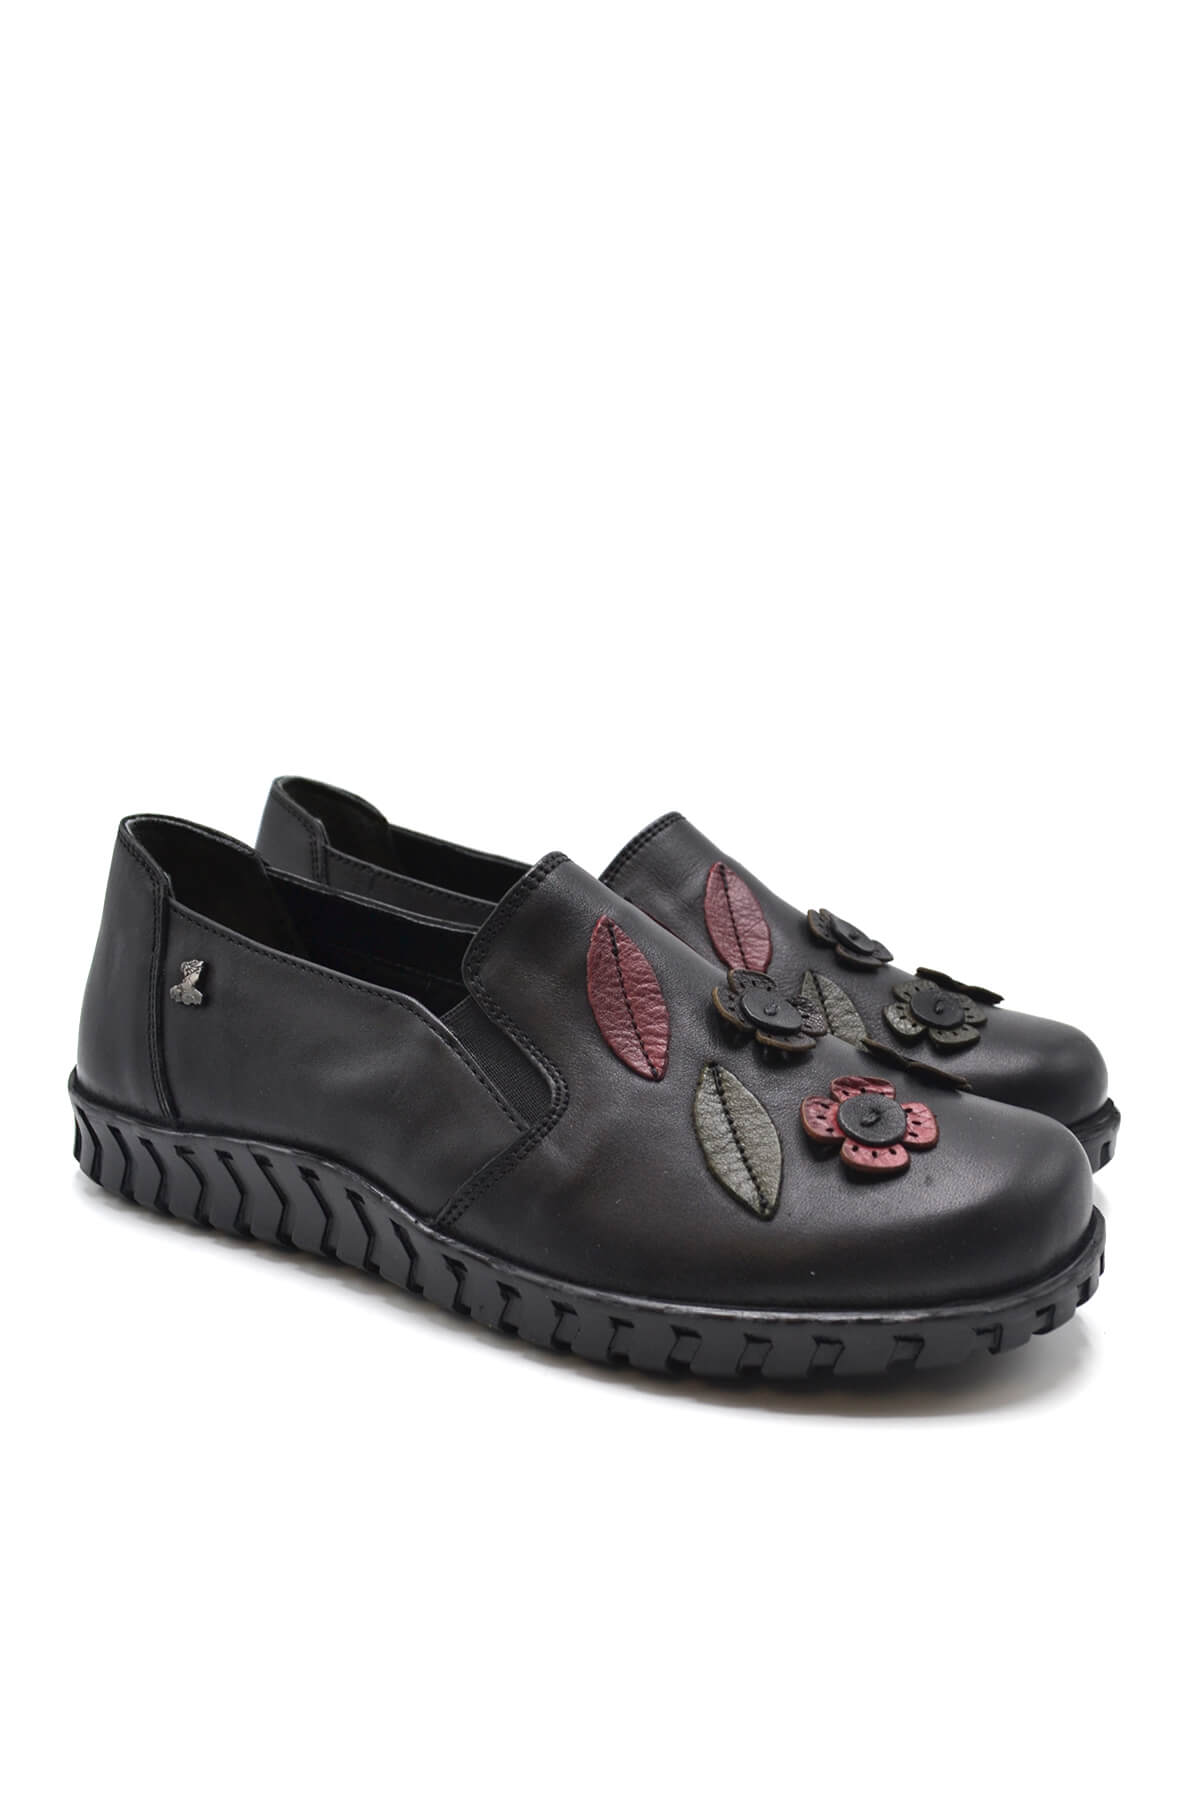 Kadın Comfort Deri Ayakkabı Siyah 2050862K